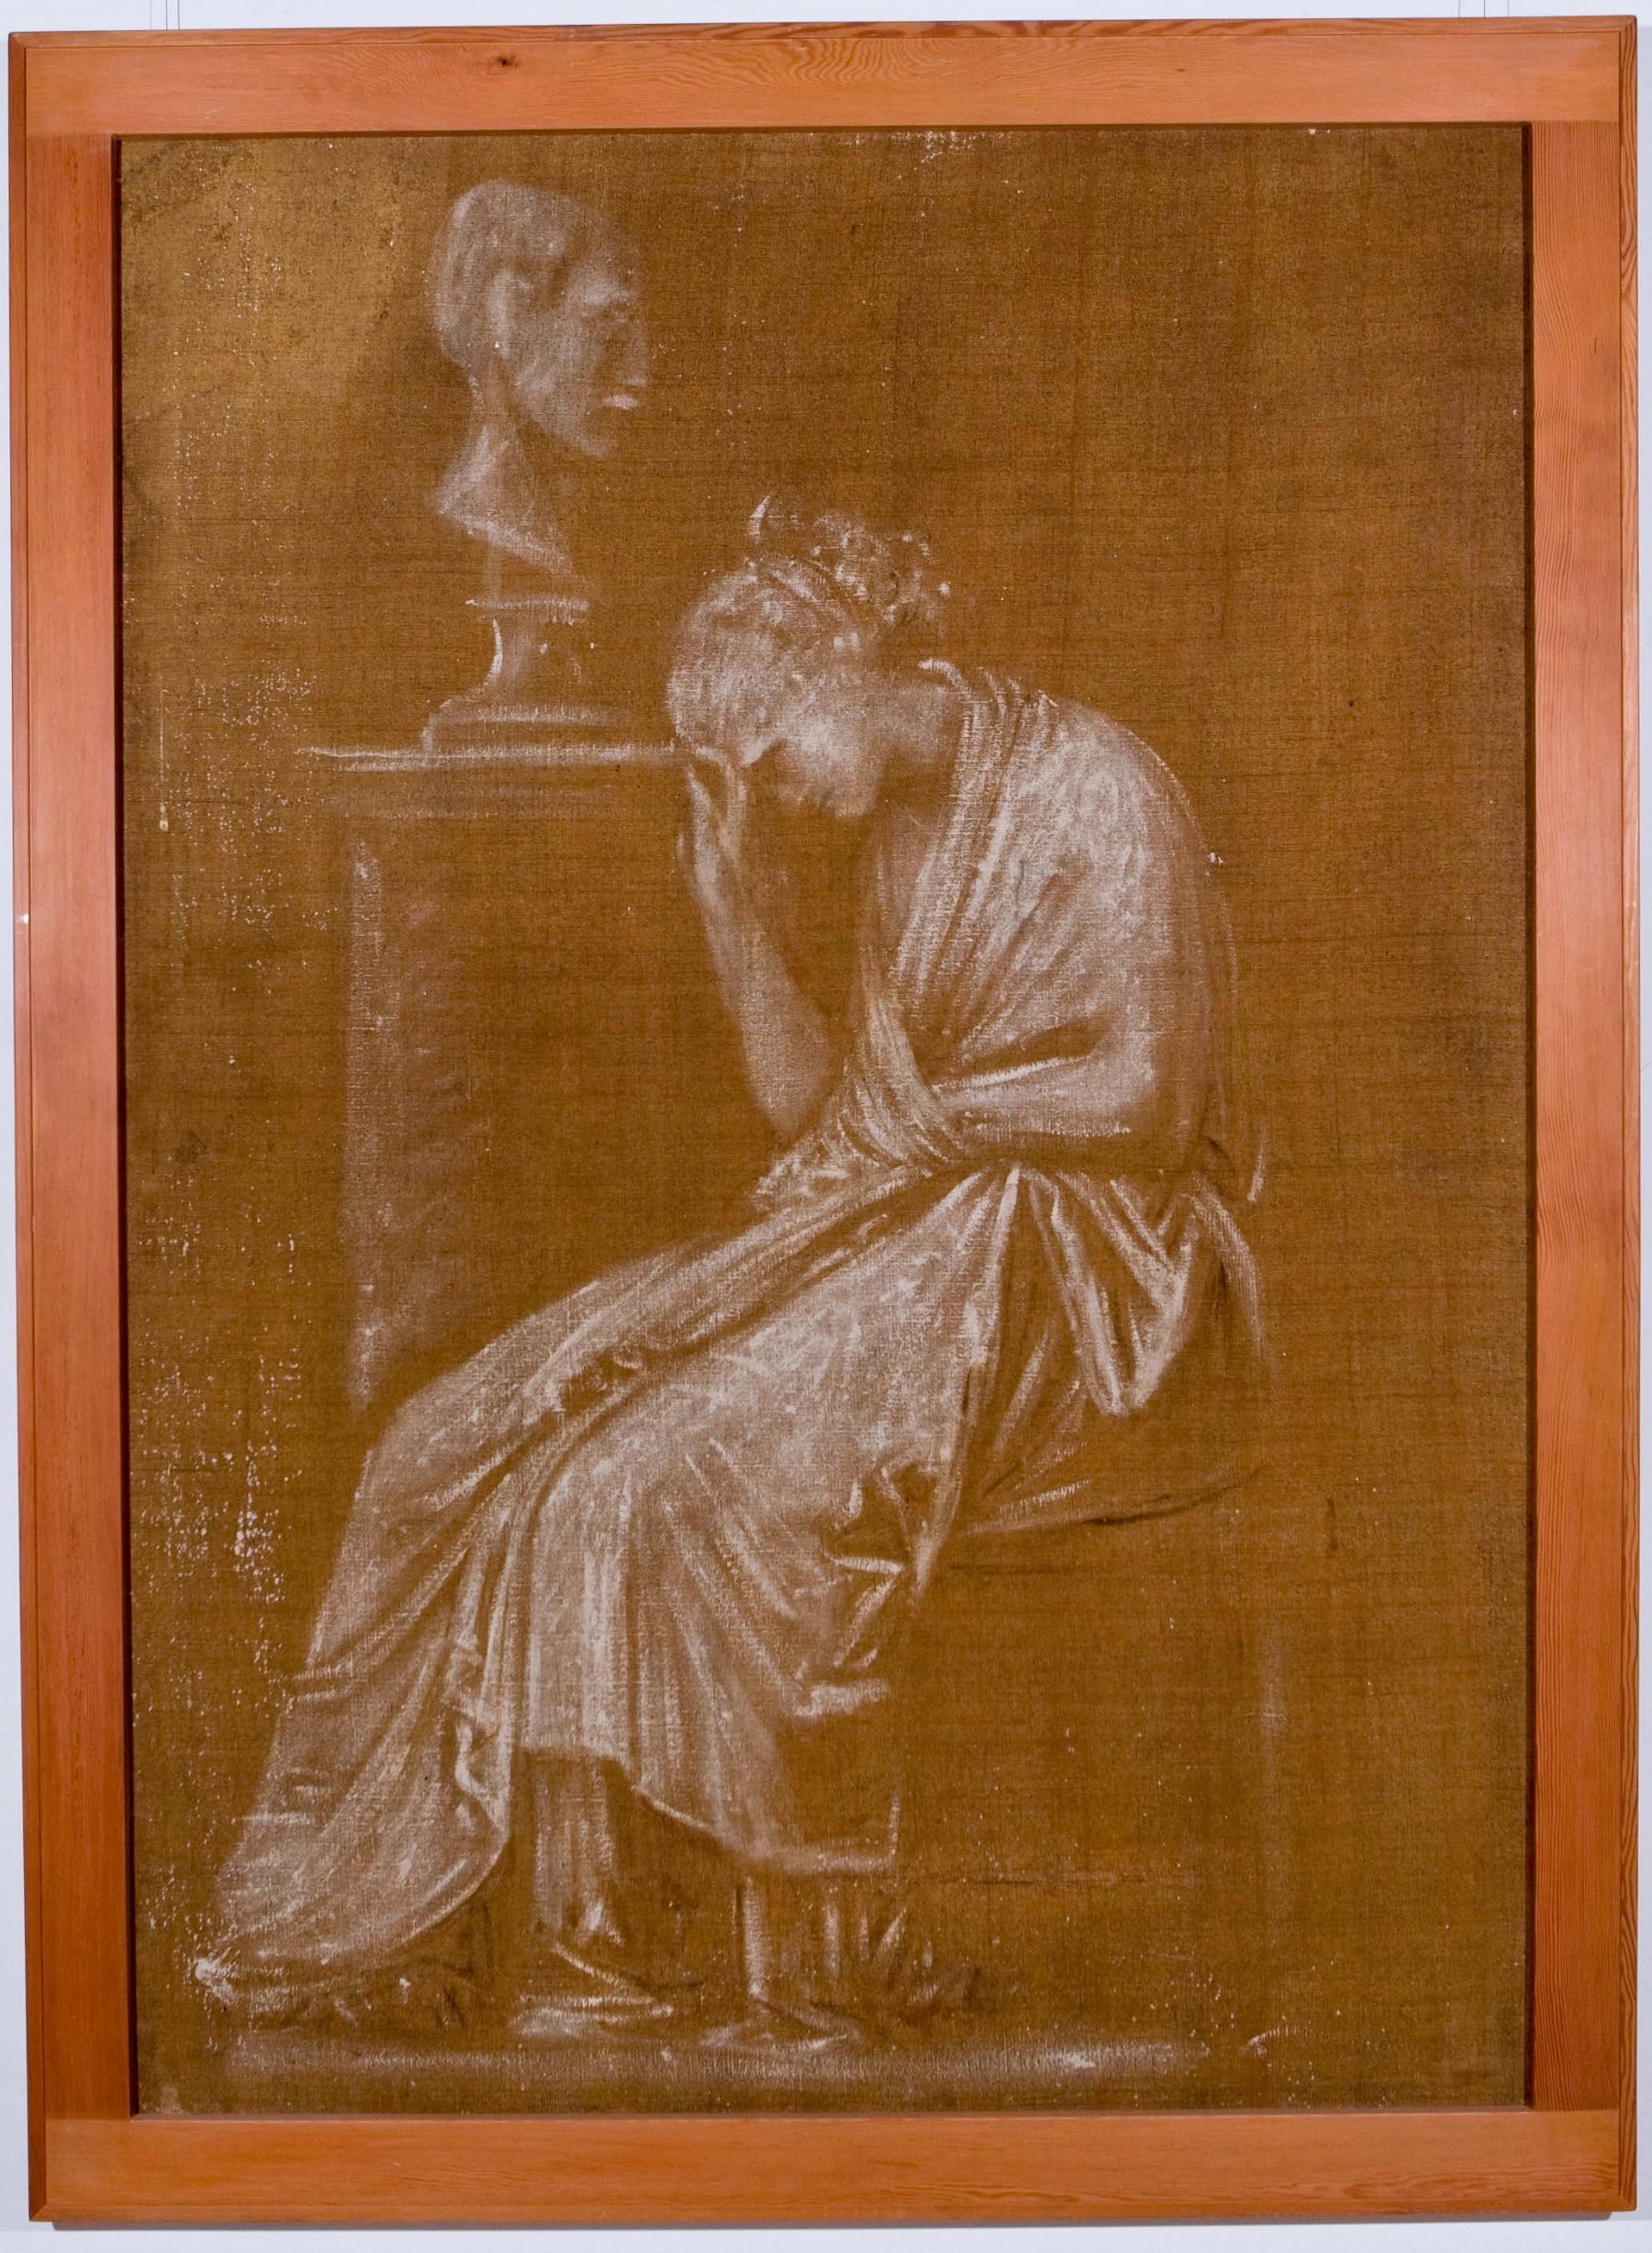 Antonio Canova (1757 - 1822), Donna piangente accanto a un busto, 1806 c., tecnica mista su tela, 173x121cm., Bassano del Grappa, Museo Civico